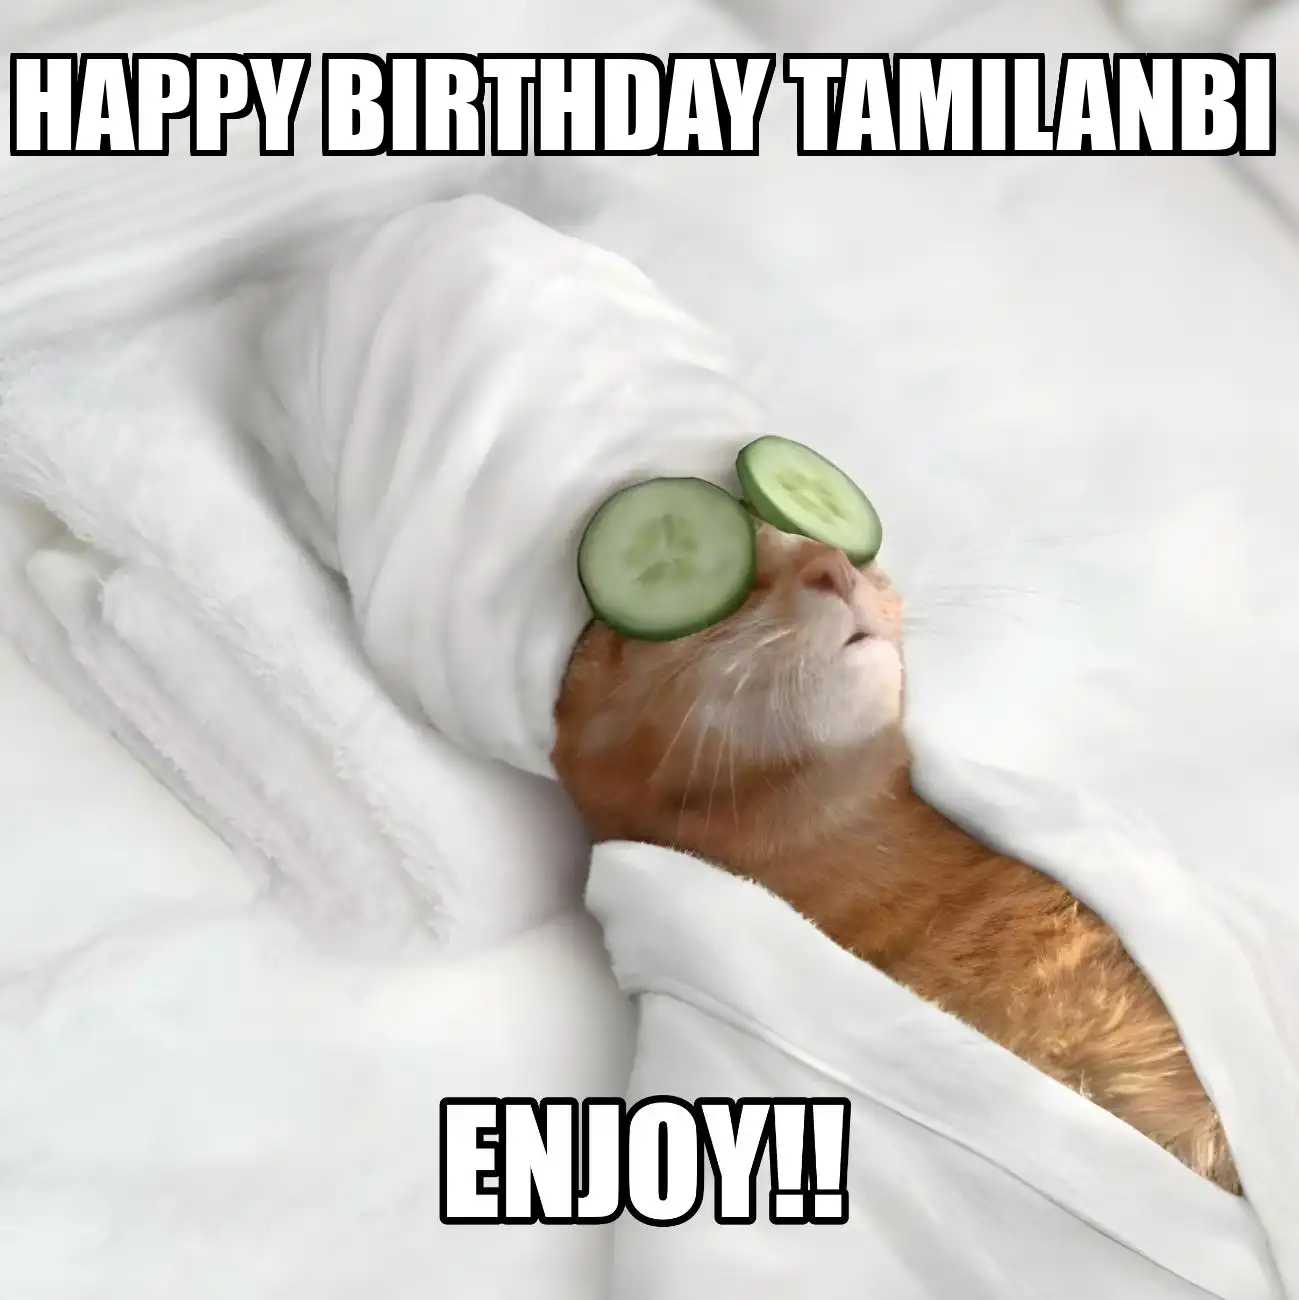 Happy Birthday Tamilanbi Enjoy Cat Meme